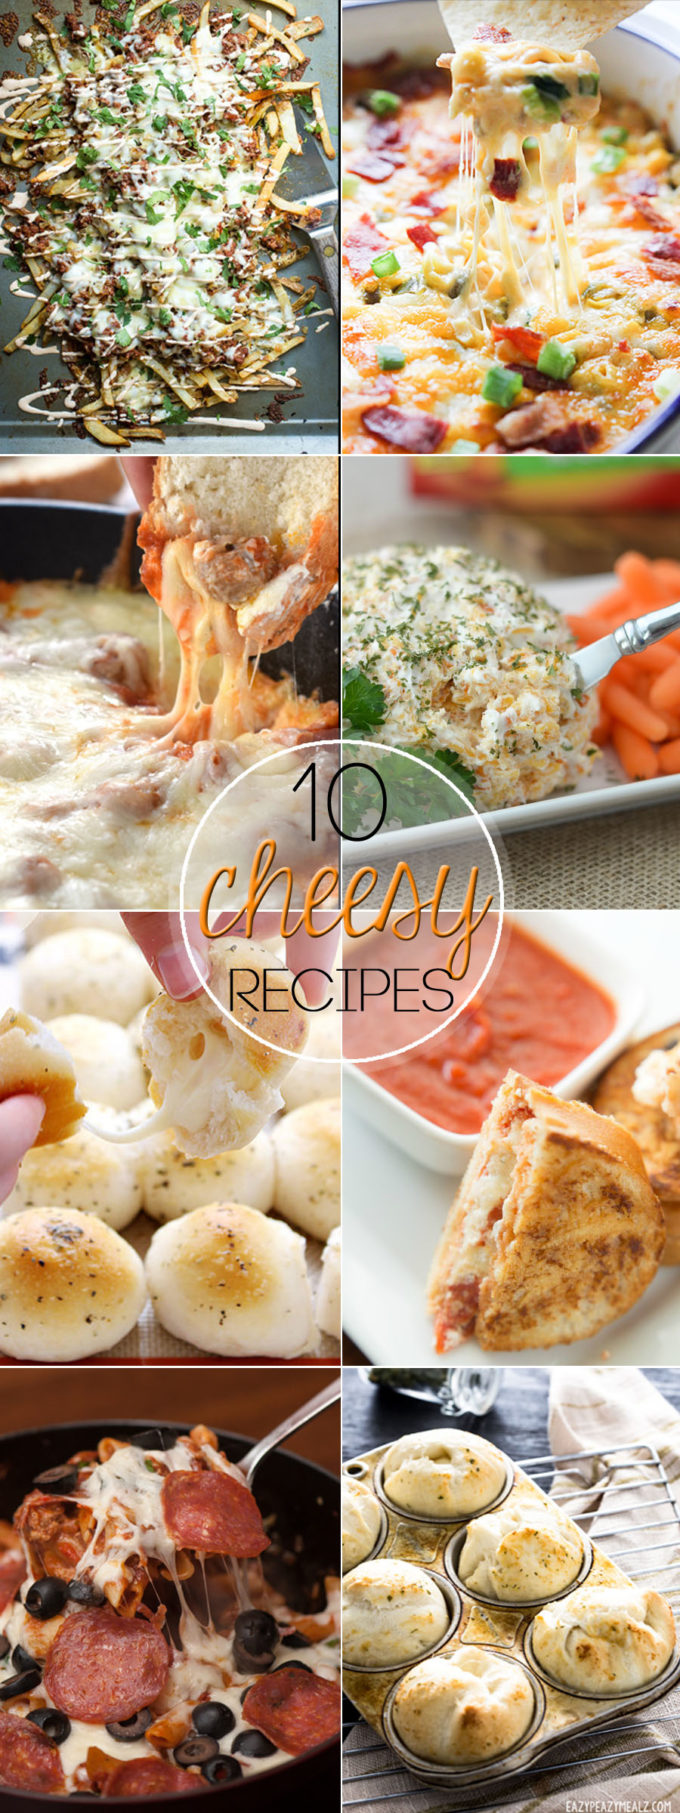 Cheese recipes, 10 cheesy recipes